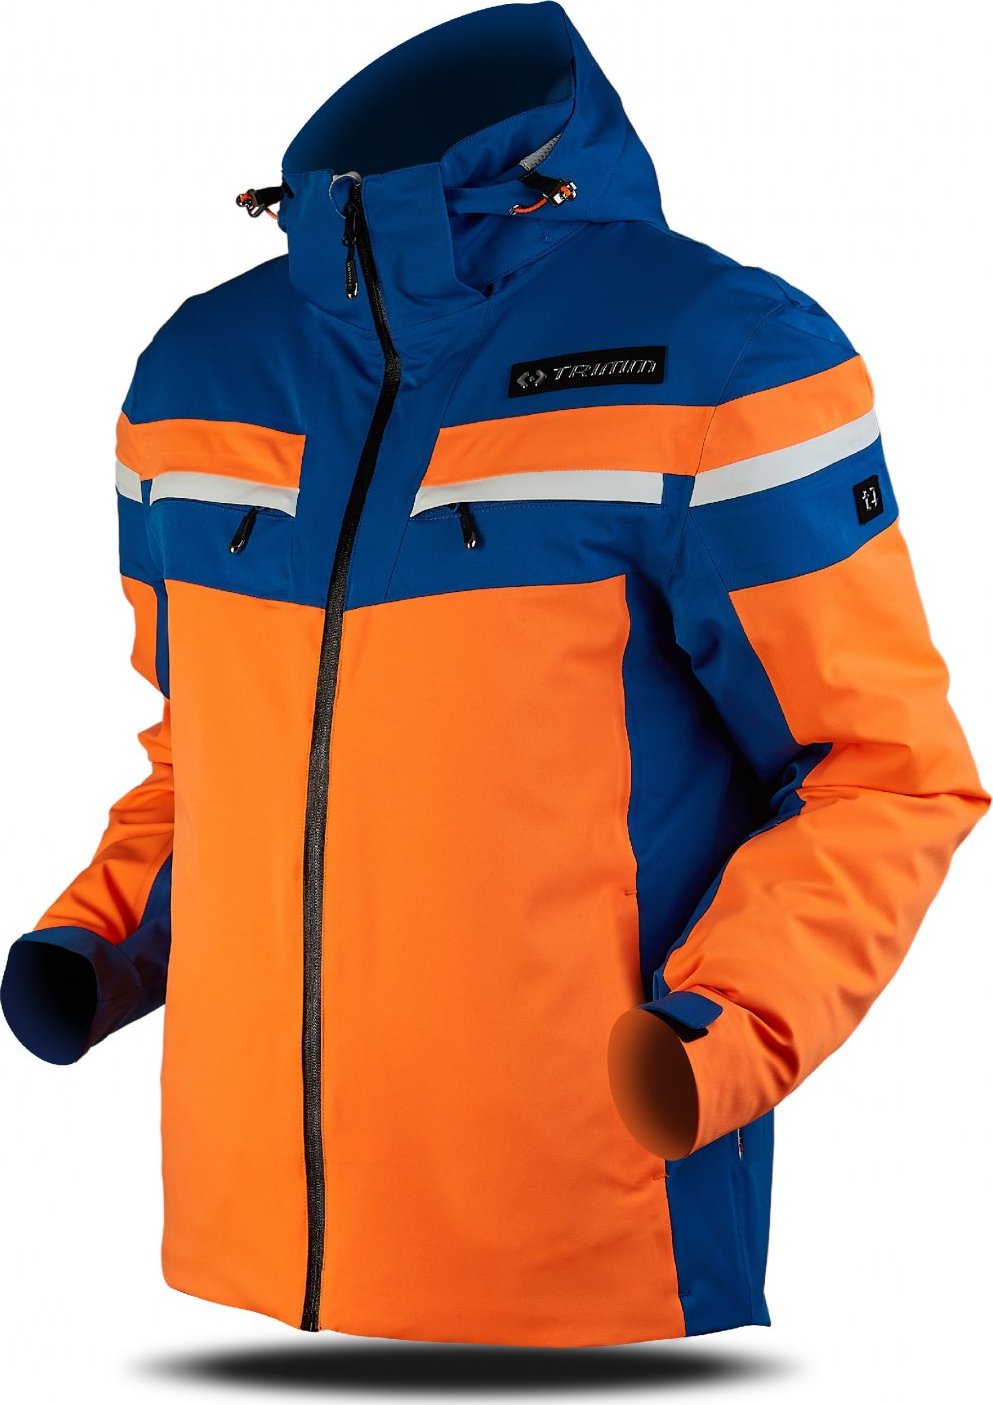 Pánská lyžařská bunda TRIMM Fusion oranžová Velikost: S, Barva: signal orange/jeans blue/white